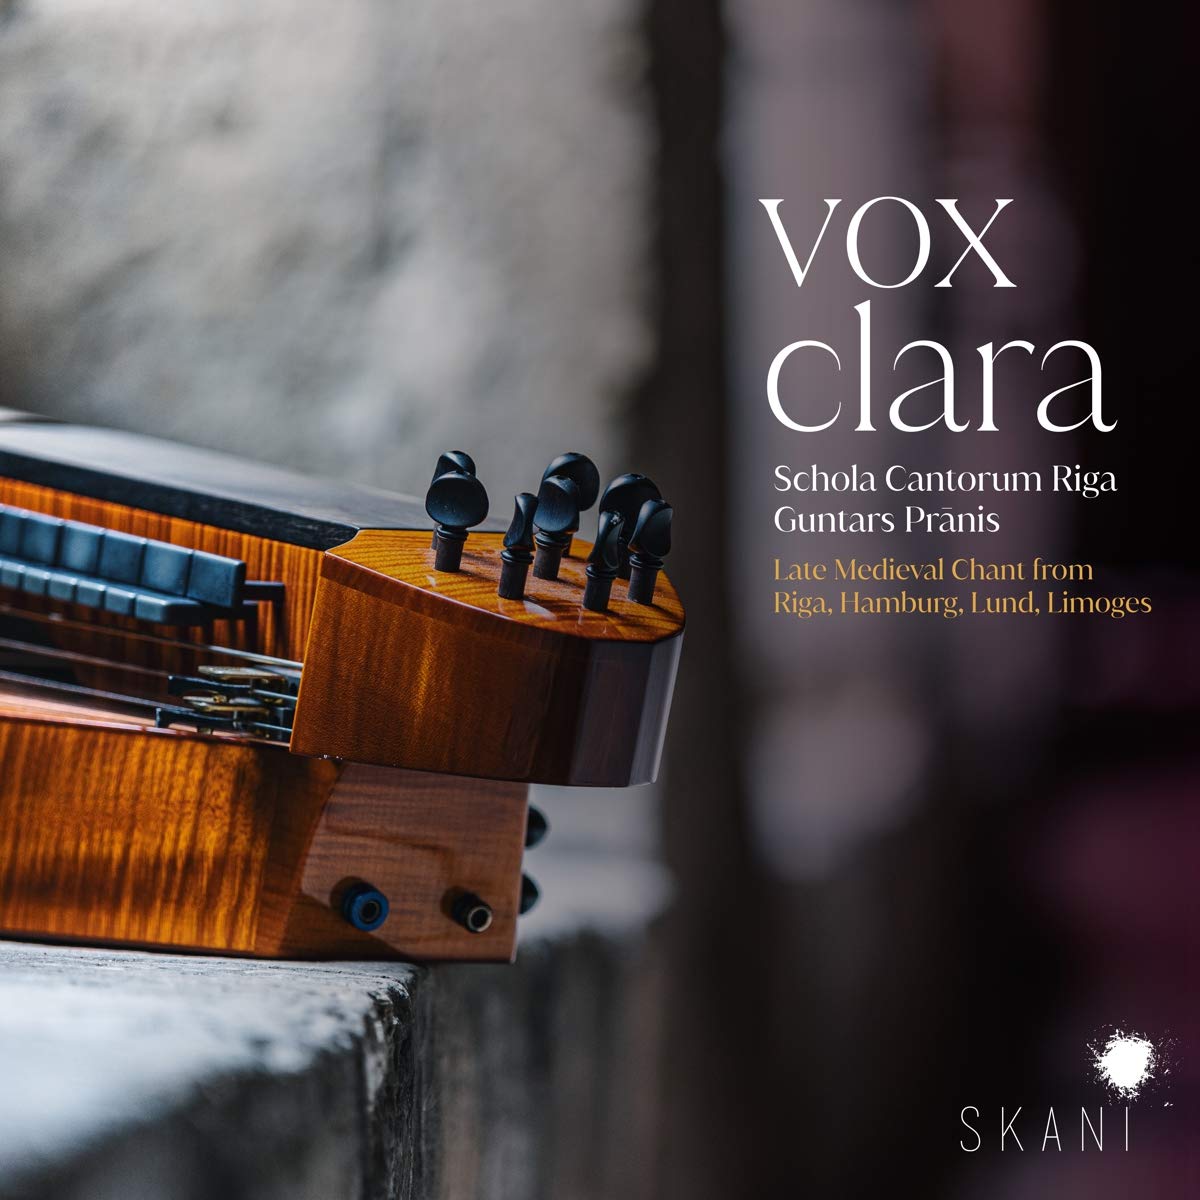 Vox clara – Schola Cantorum Riga